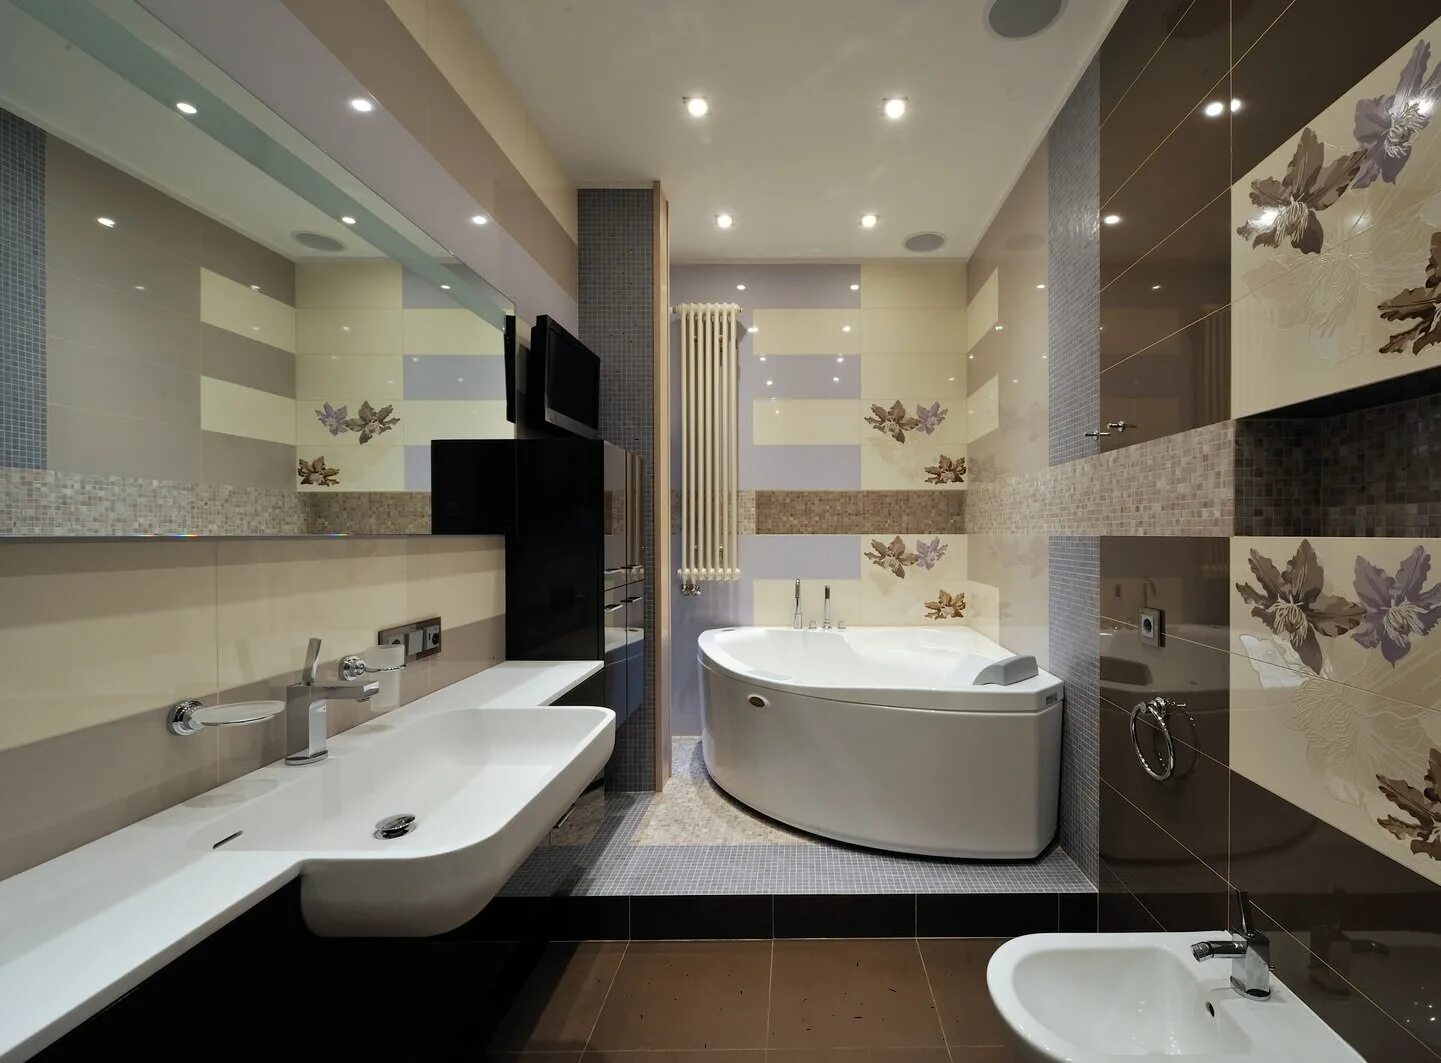 Ванная в квартире. Ванная комната. Красивая ванная в квартире. Готовый интерьер ванной комнаты. Интерьер ванной комнаты с угловой ванной.